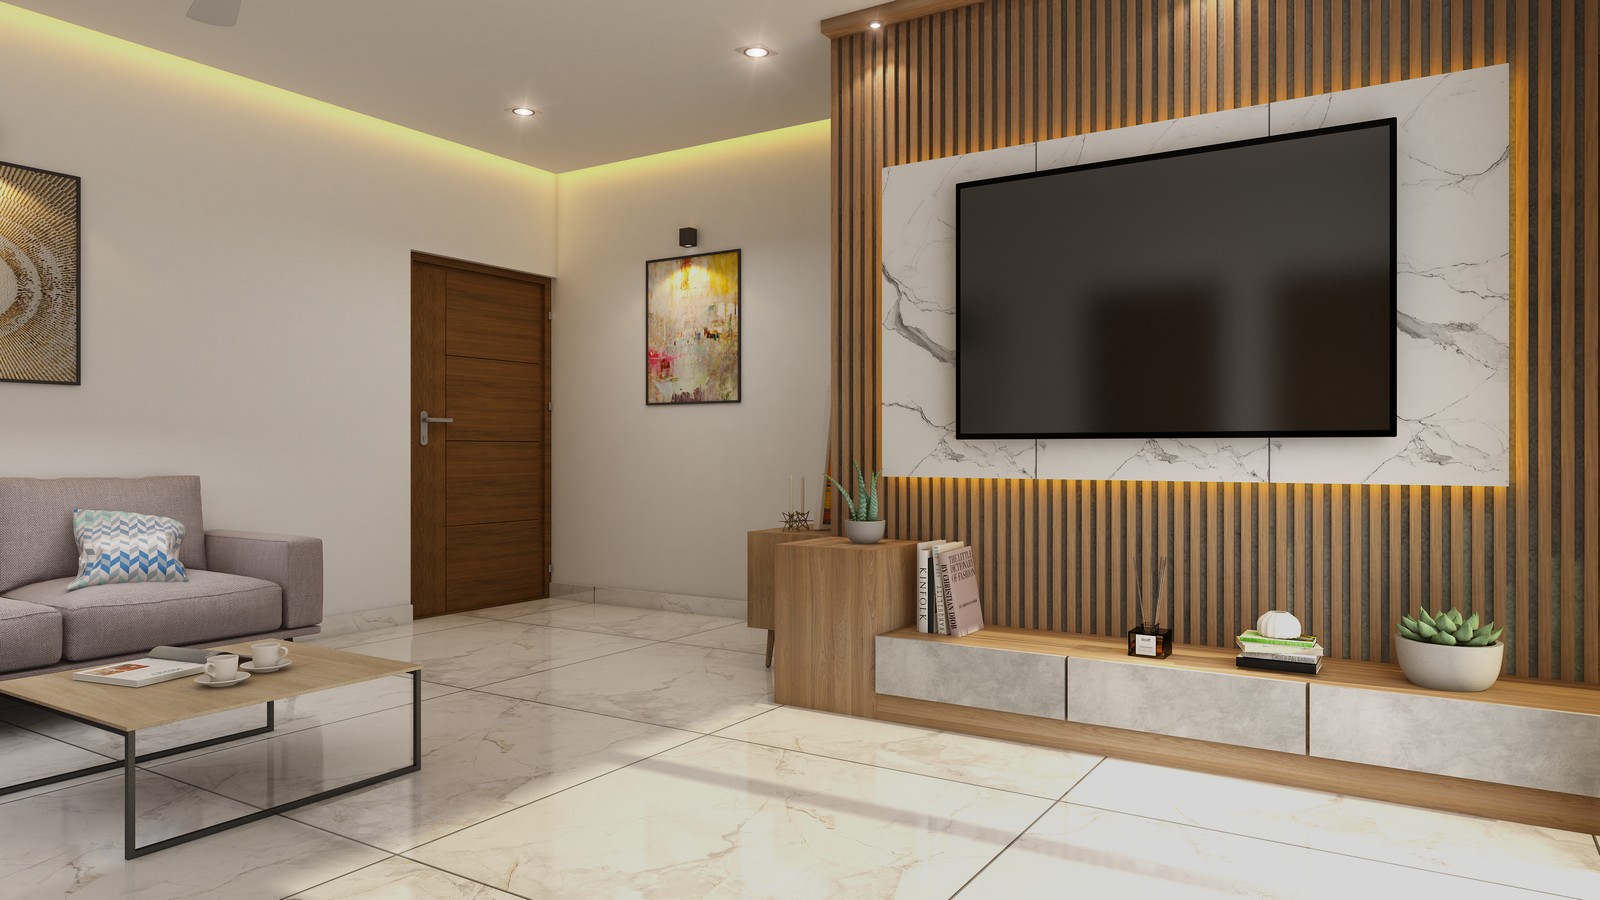 Luxury 2, 3, 4 BHK Apartments in Karyavattom, Trivandrum: Asset Canzara